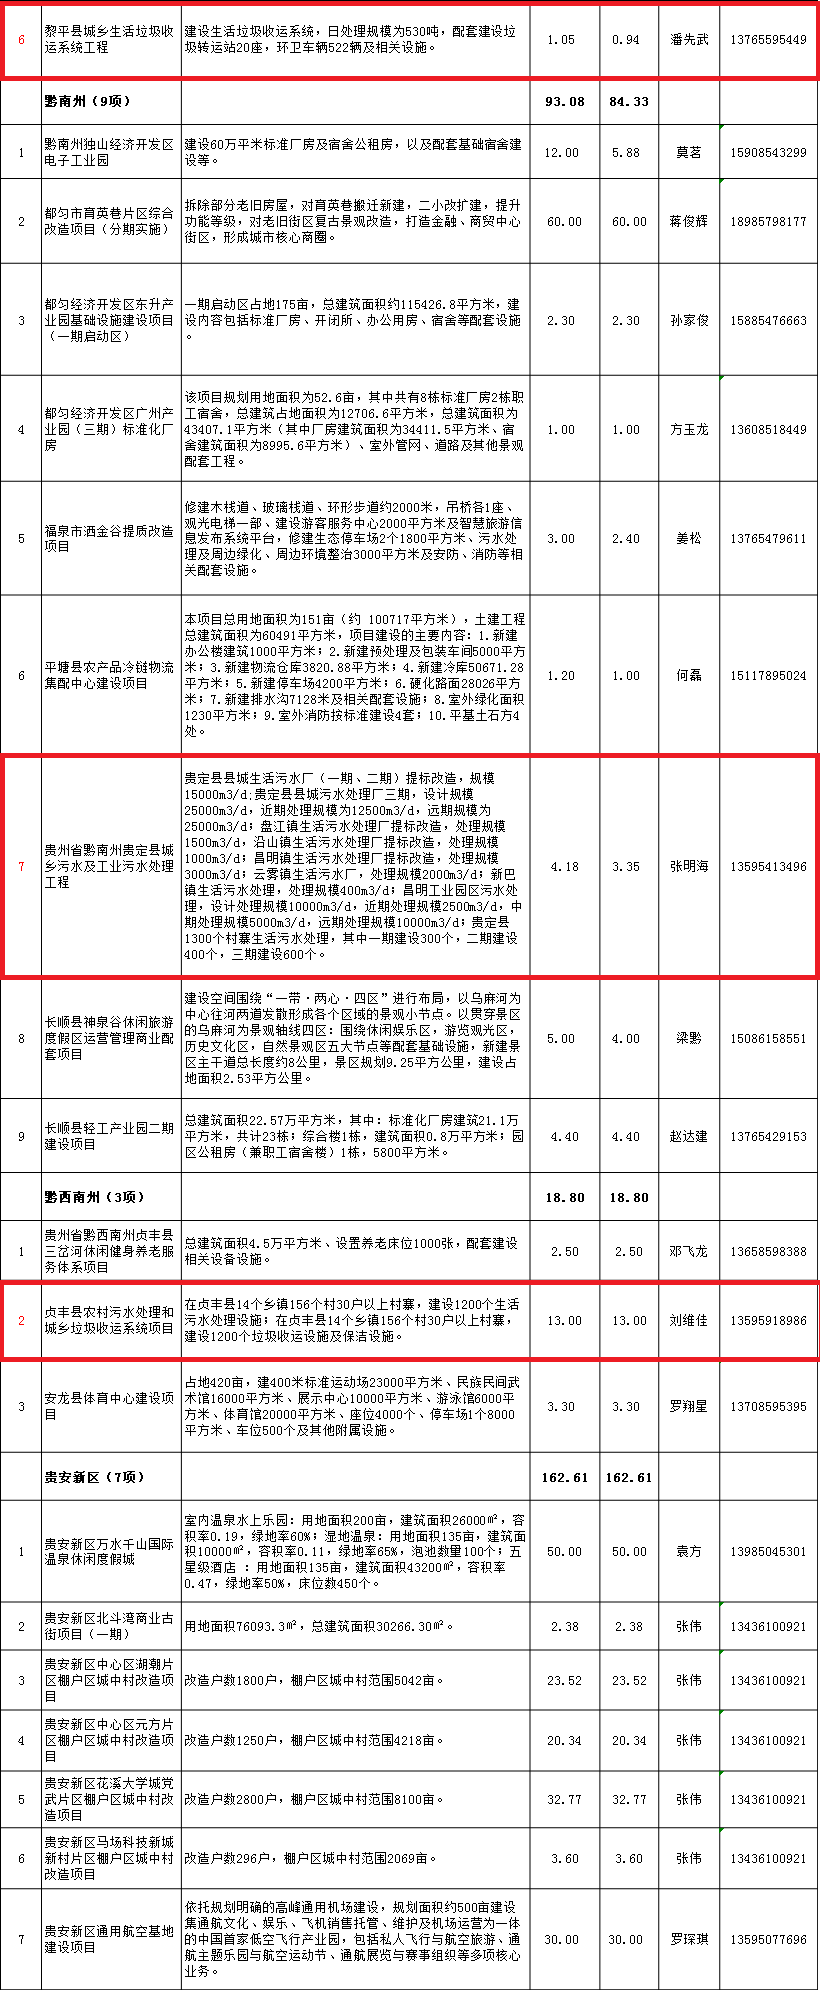 5贵州省2018年第二批重大民间投资项目工程包